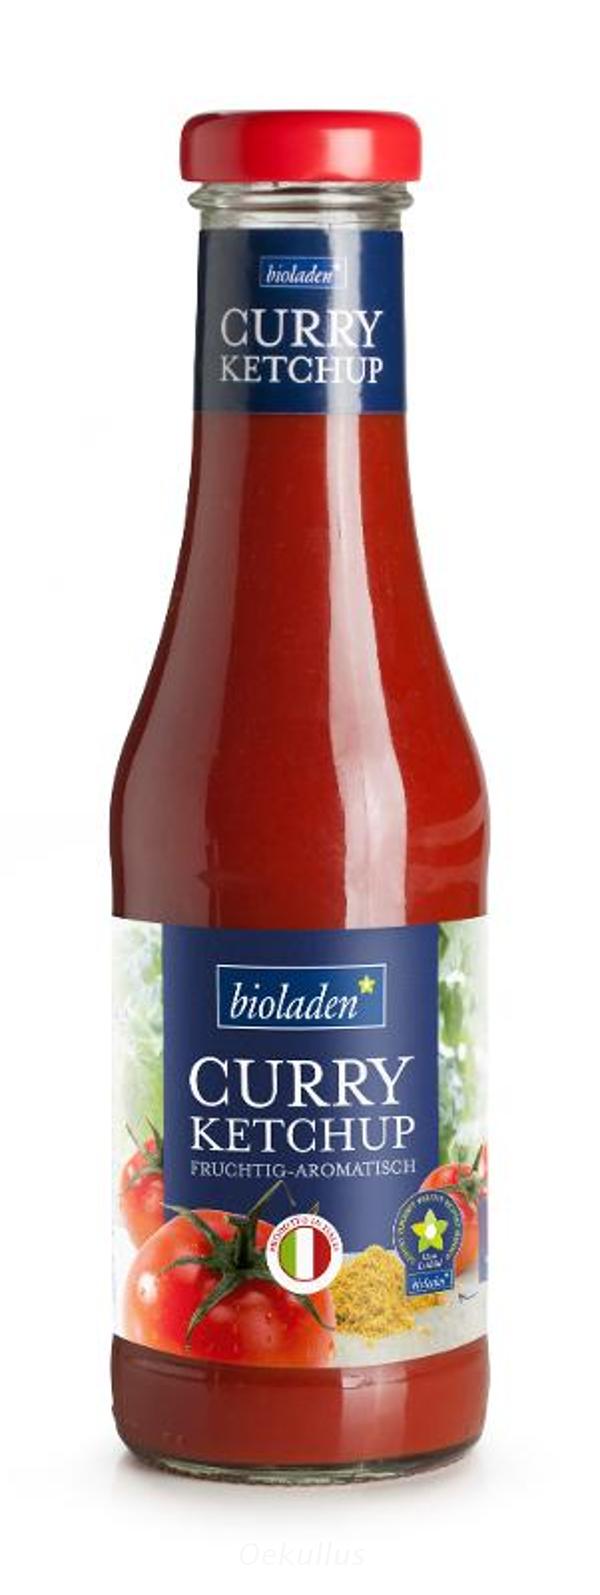 Produktfoto zu Curry Ketchup